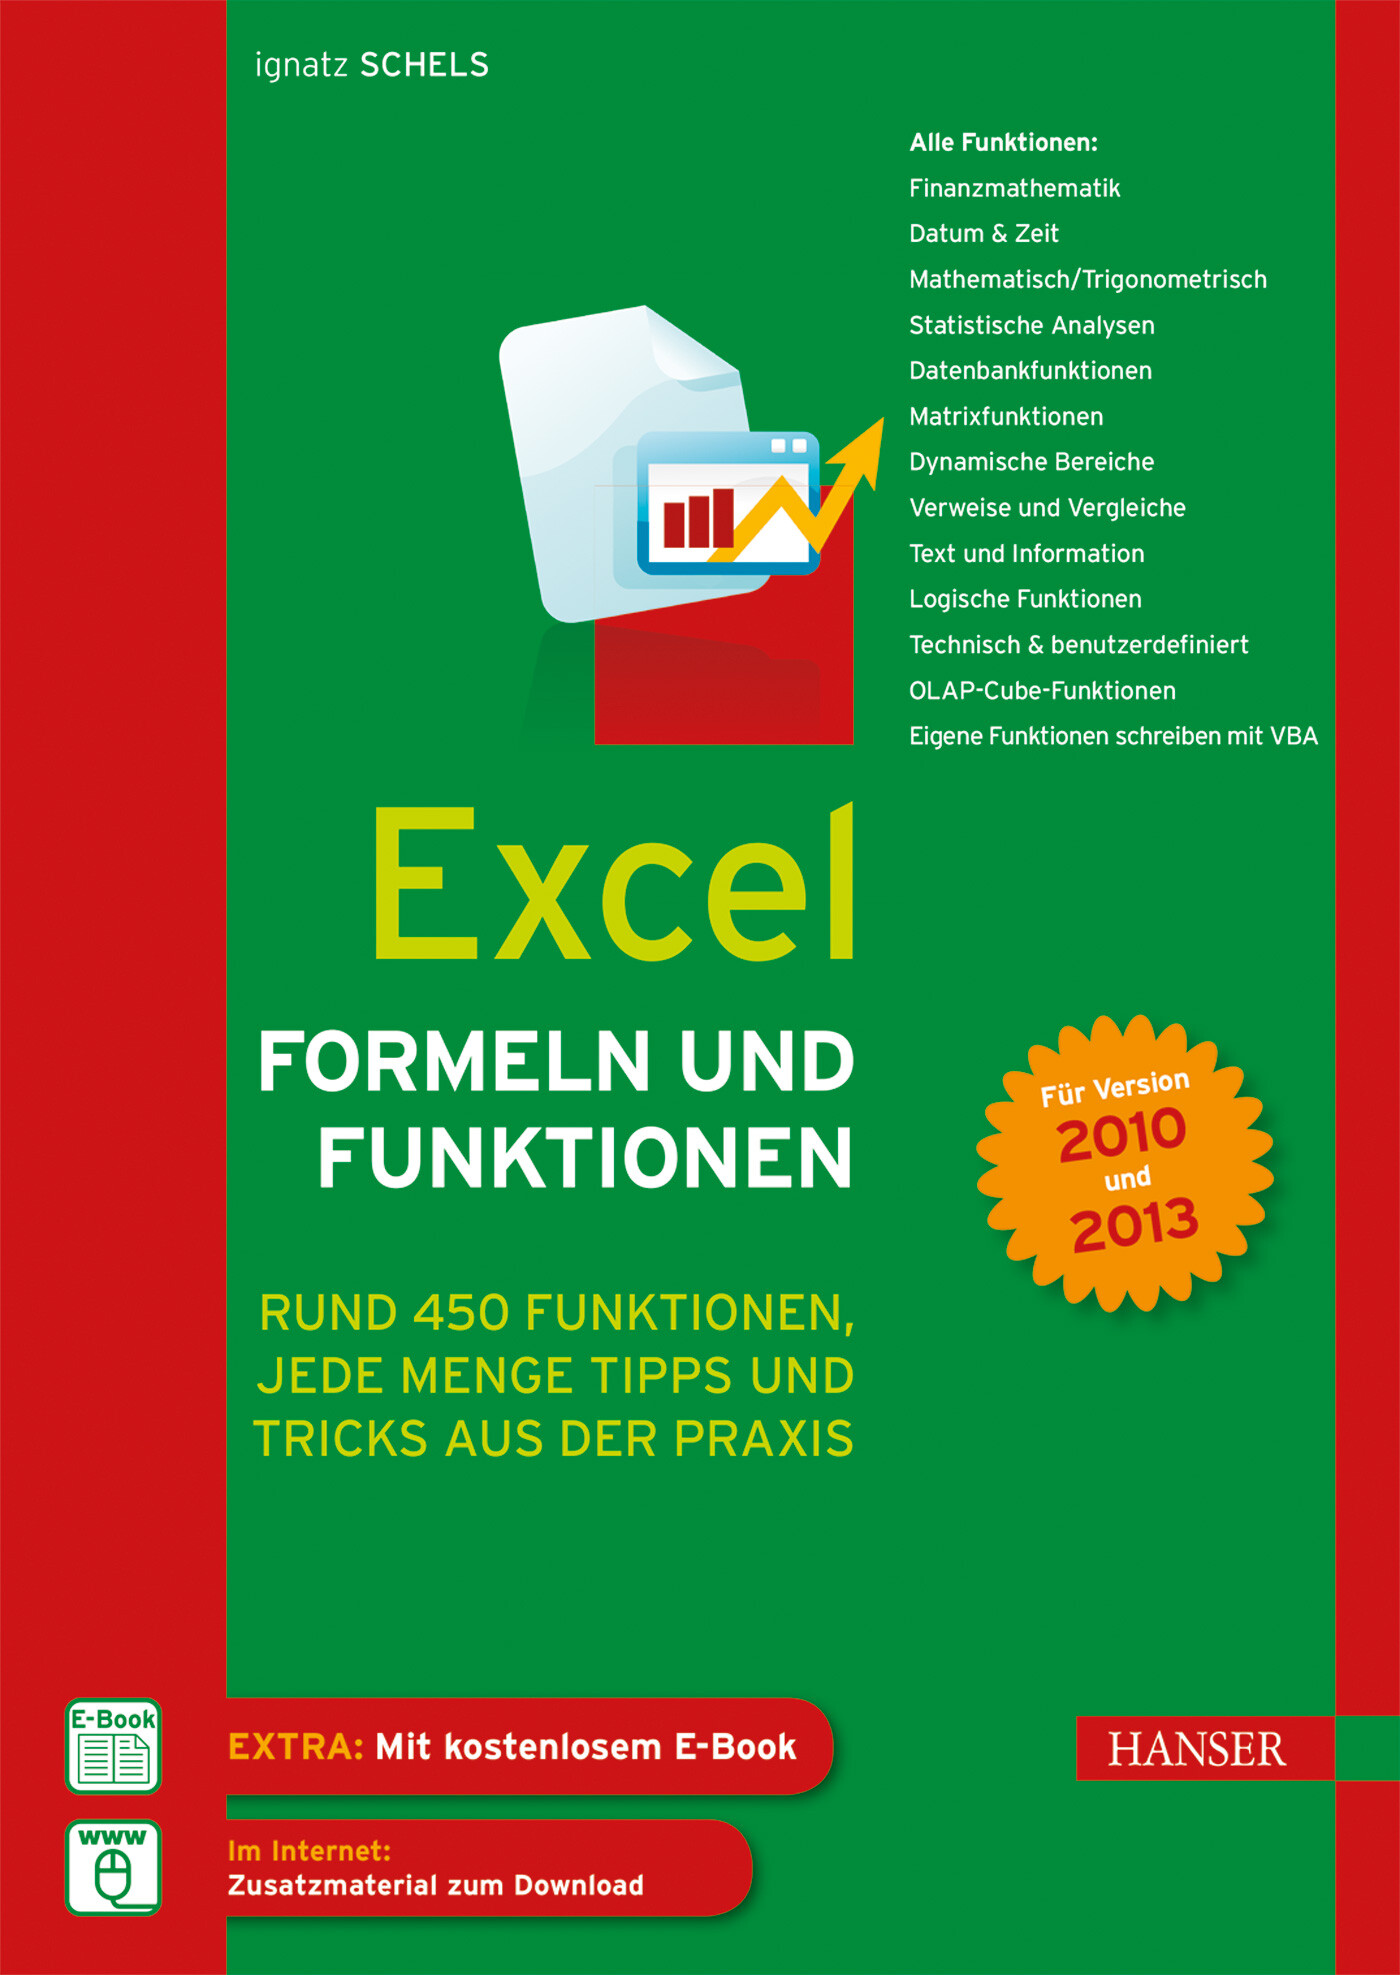 Excel Formeln und Funktionen mit E-Book